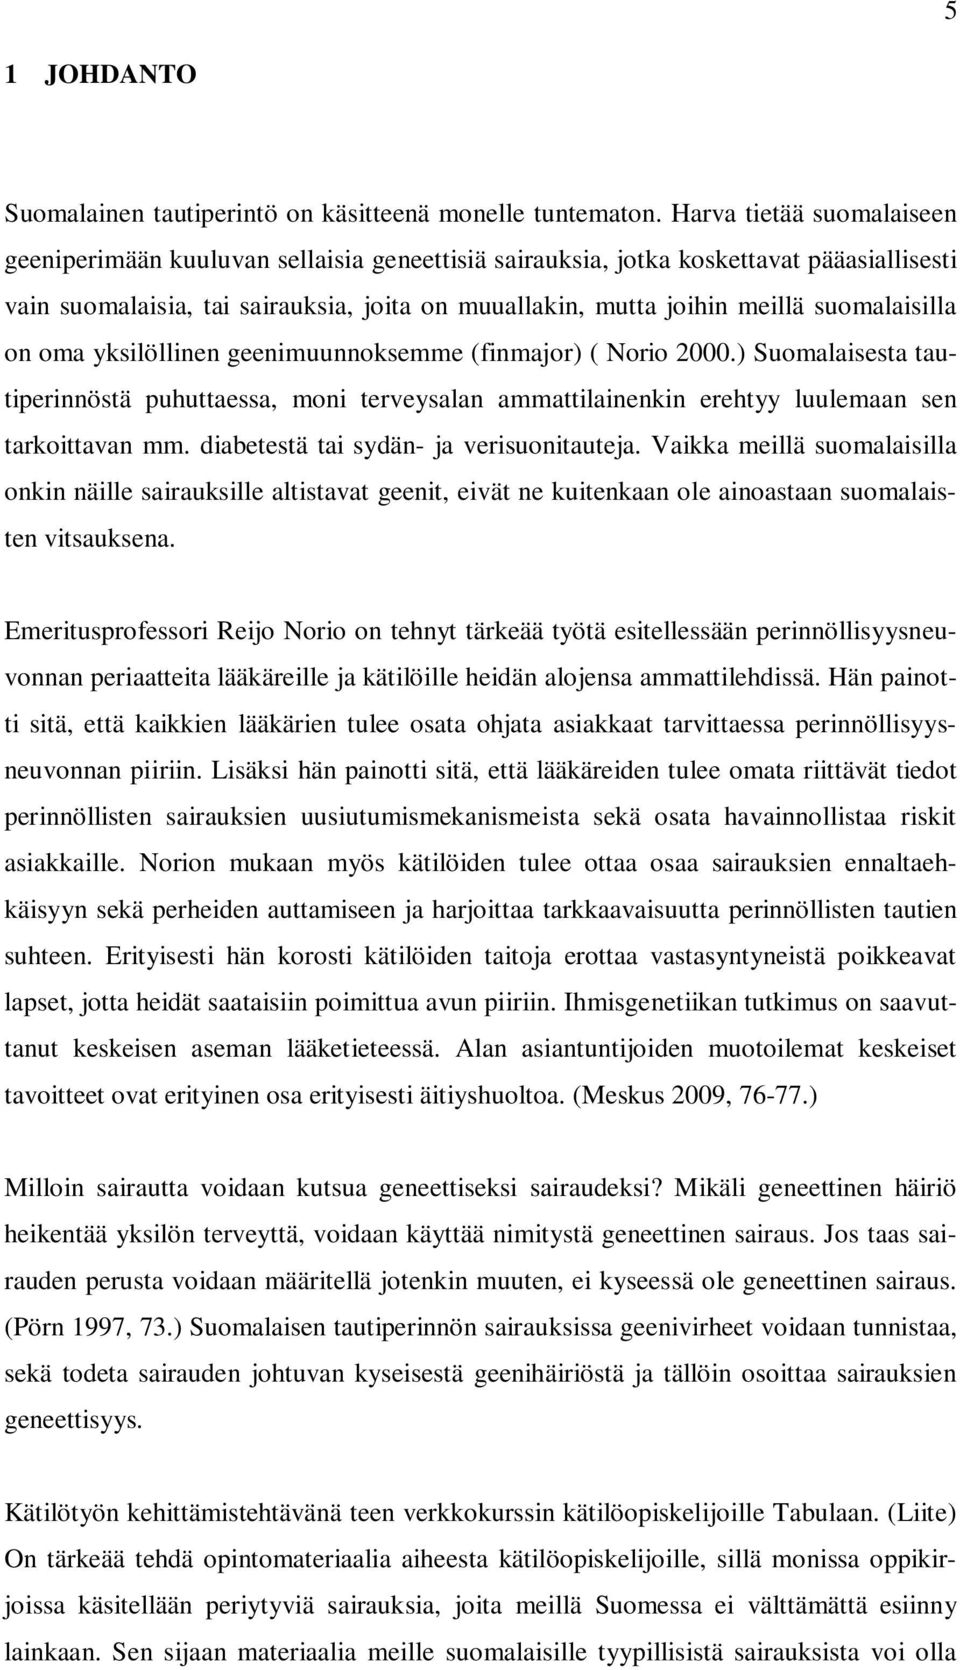 suomalaisilla on oma yksilöllinen geenimuunnoksemme (finmajor) ( Norio 2000.) Suomalaisesta tautiperinnöstä puhuttaessa, moni terveysalan ammattilainenkin erehtyy luulemaan sen tarkoittavan mm.